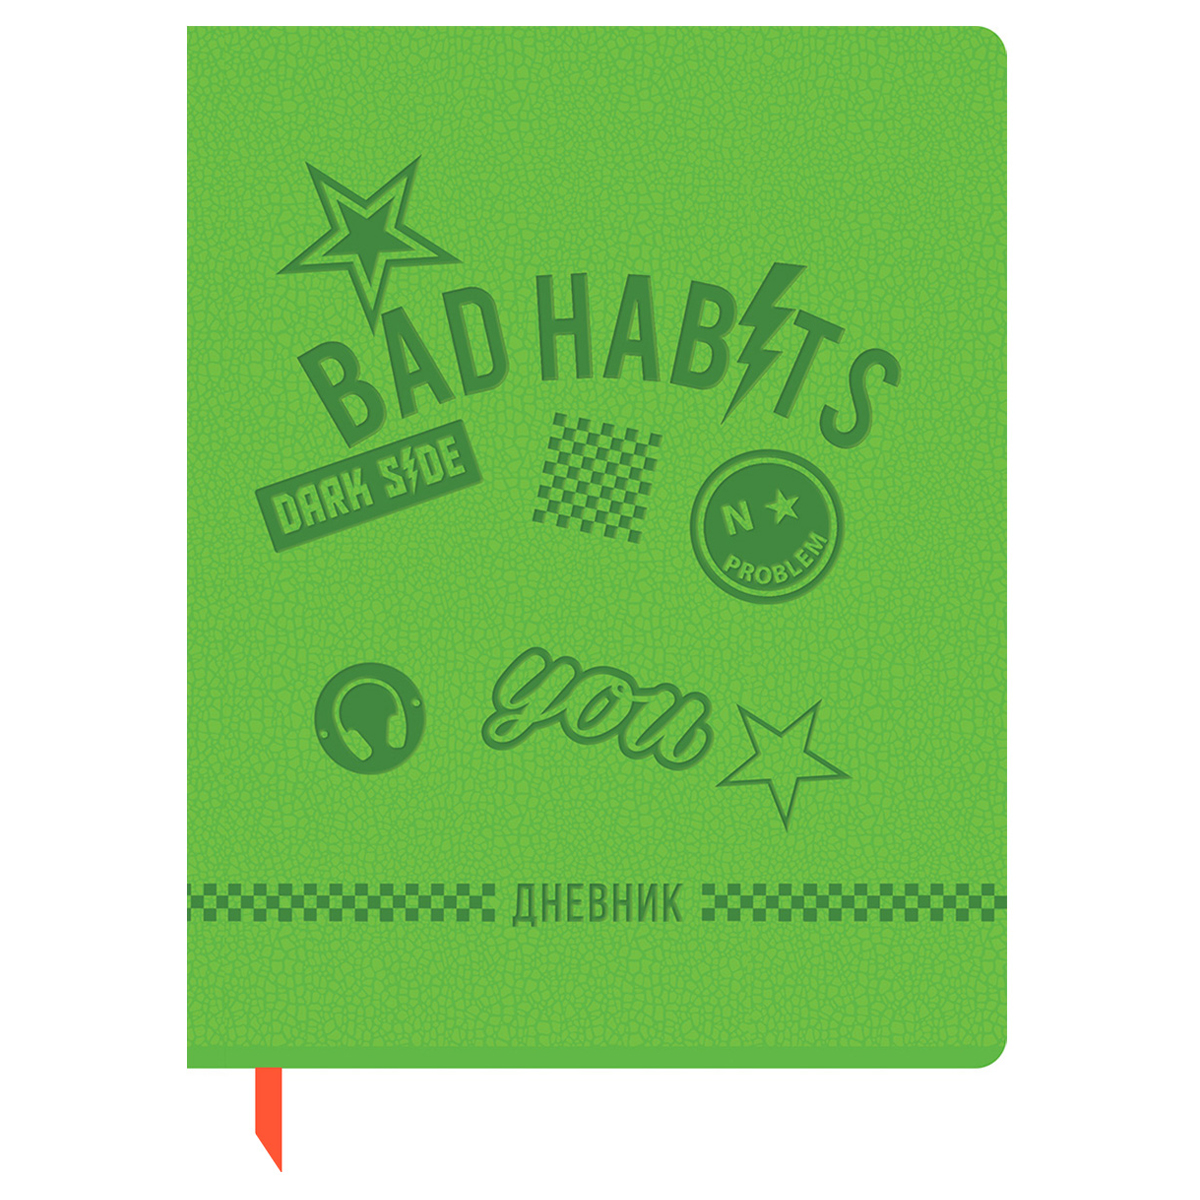  1-11 . 48.  BG "Bad habits", .  